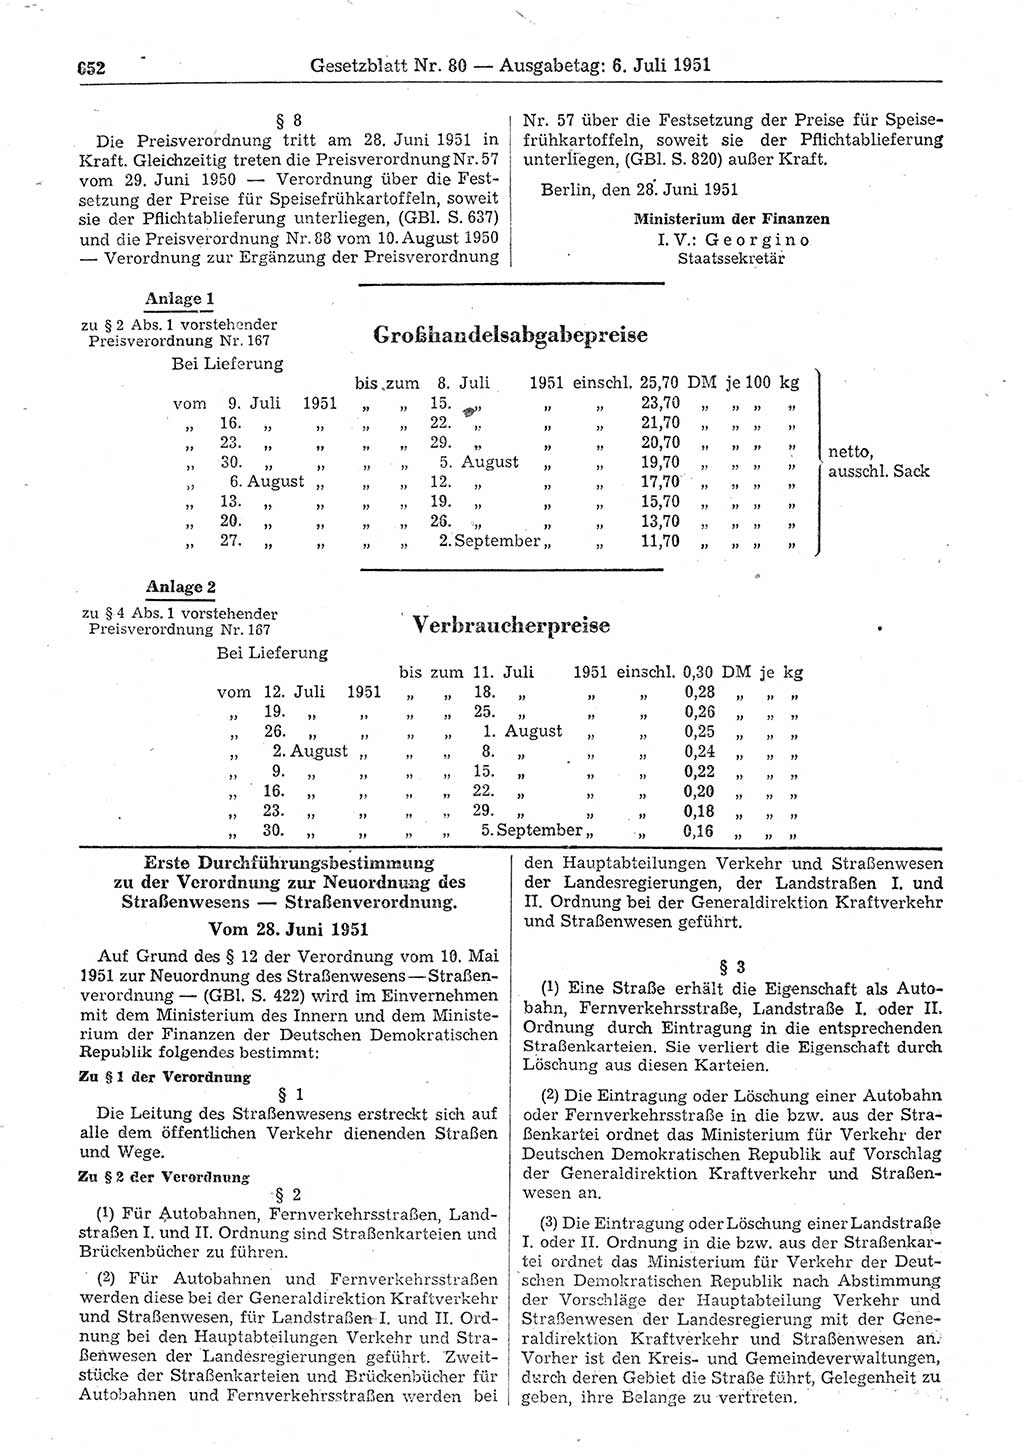 Gesetzblatt (GBl.) der Deutschen Demokratischen Republik (DDR) 1951, Seite 652 (GBl. DDR 1951, S. 652)